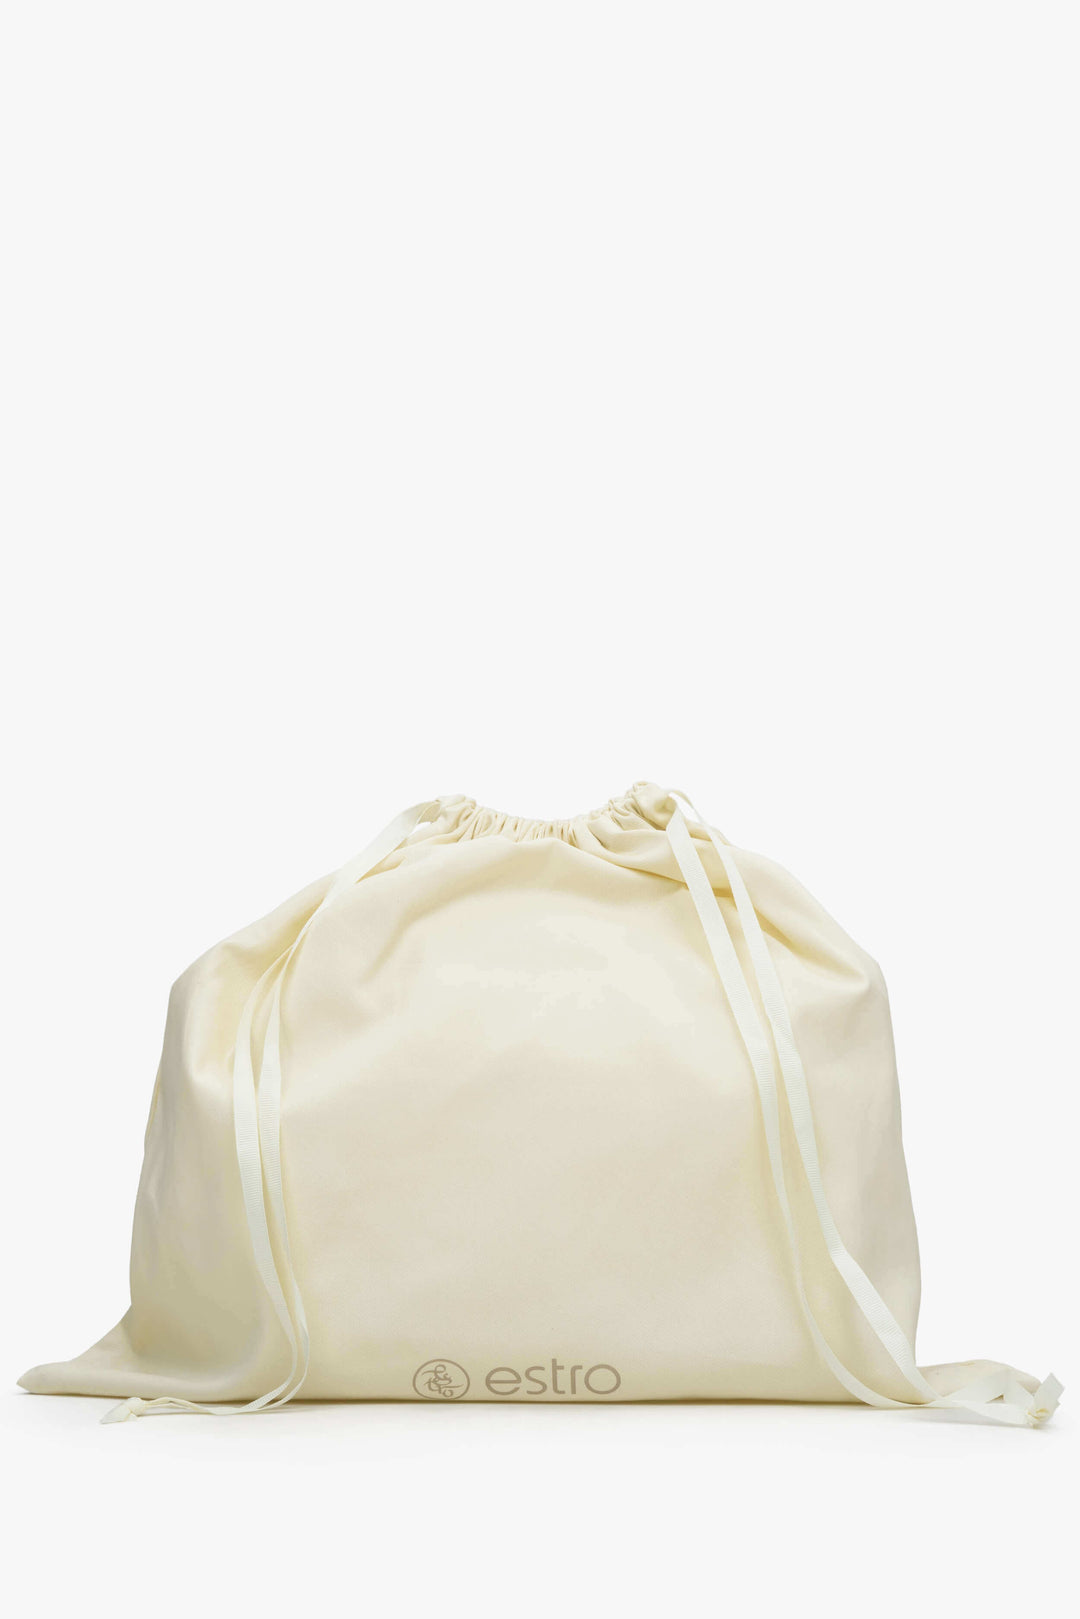 Women's Black Shoulder Bag with Golden Hardware made of Italian Genuine Leather Estro ER00114785